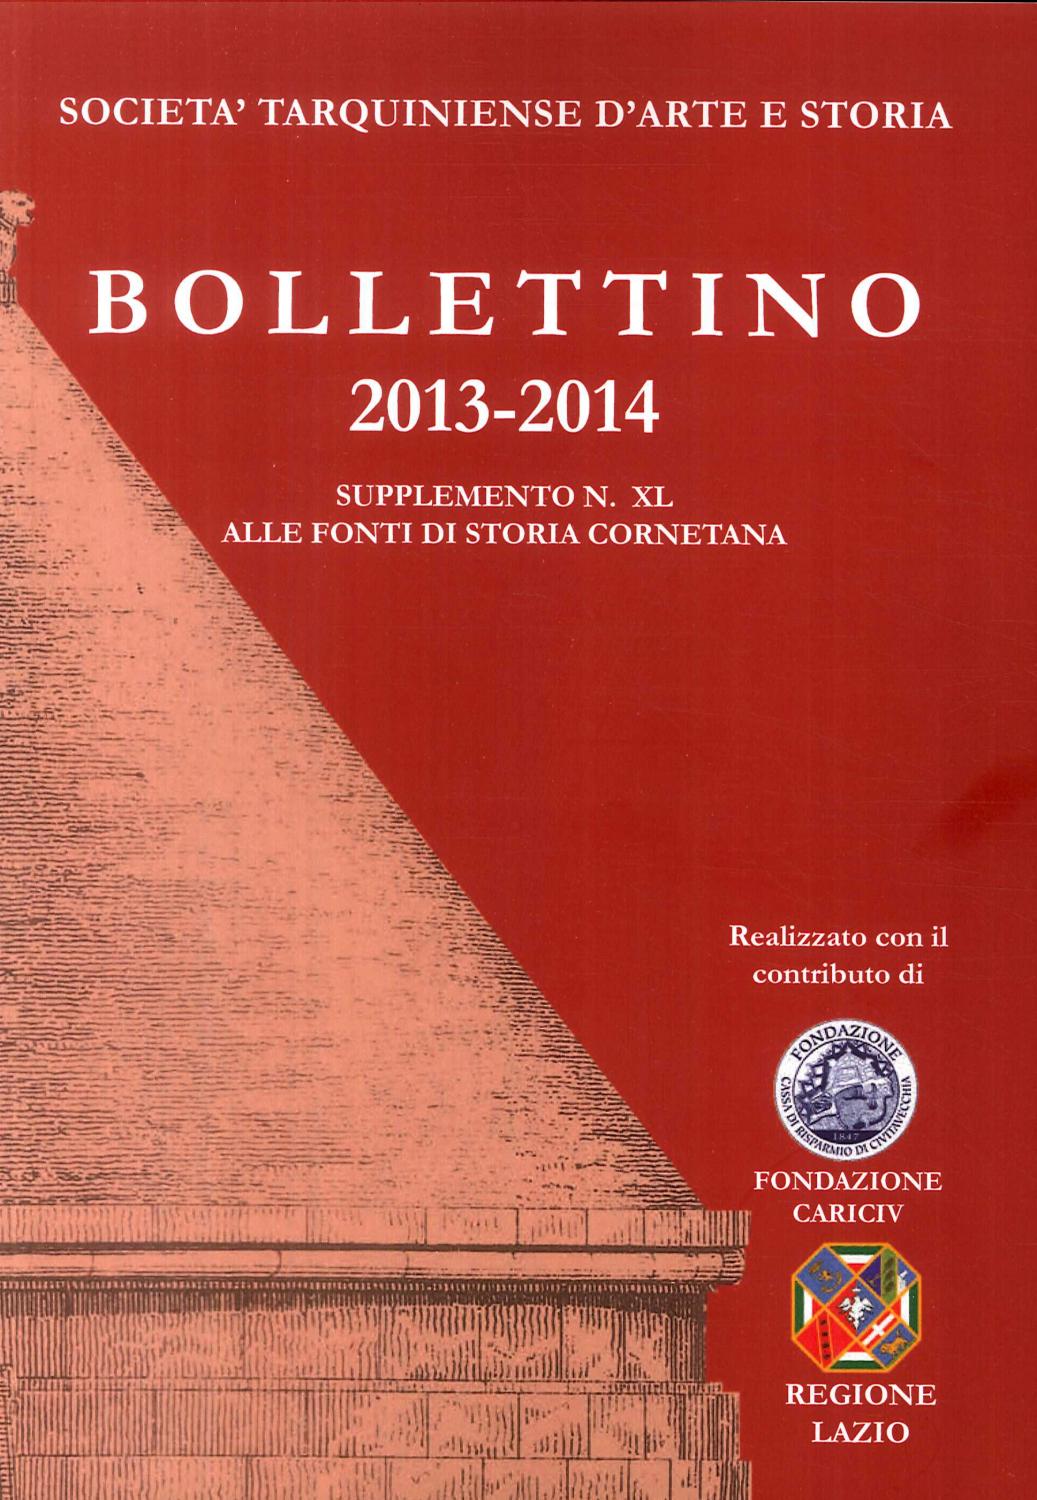 Bollettino STAS. Supplemento 40 alle fonti di storia cornetana (2013-2014) - Aa.vv.